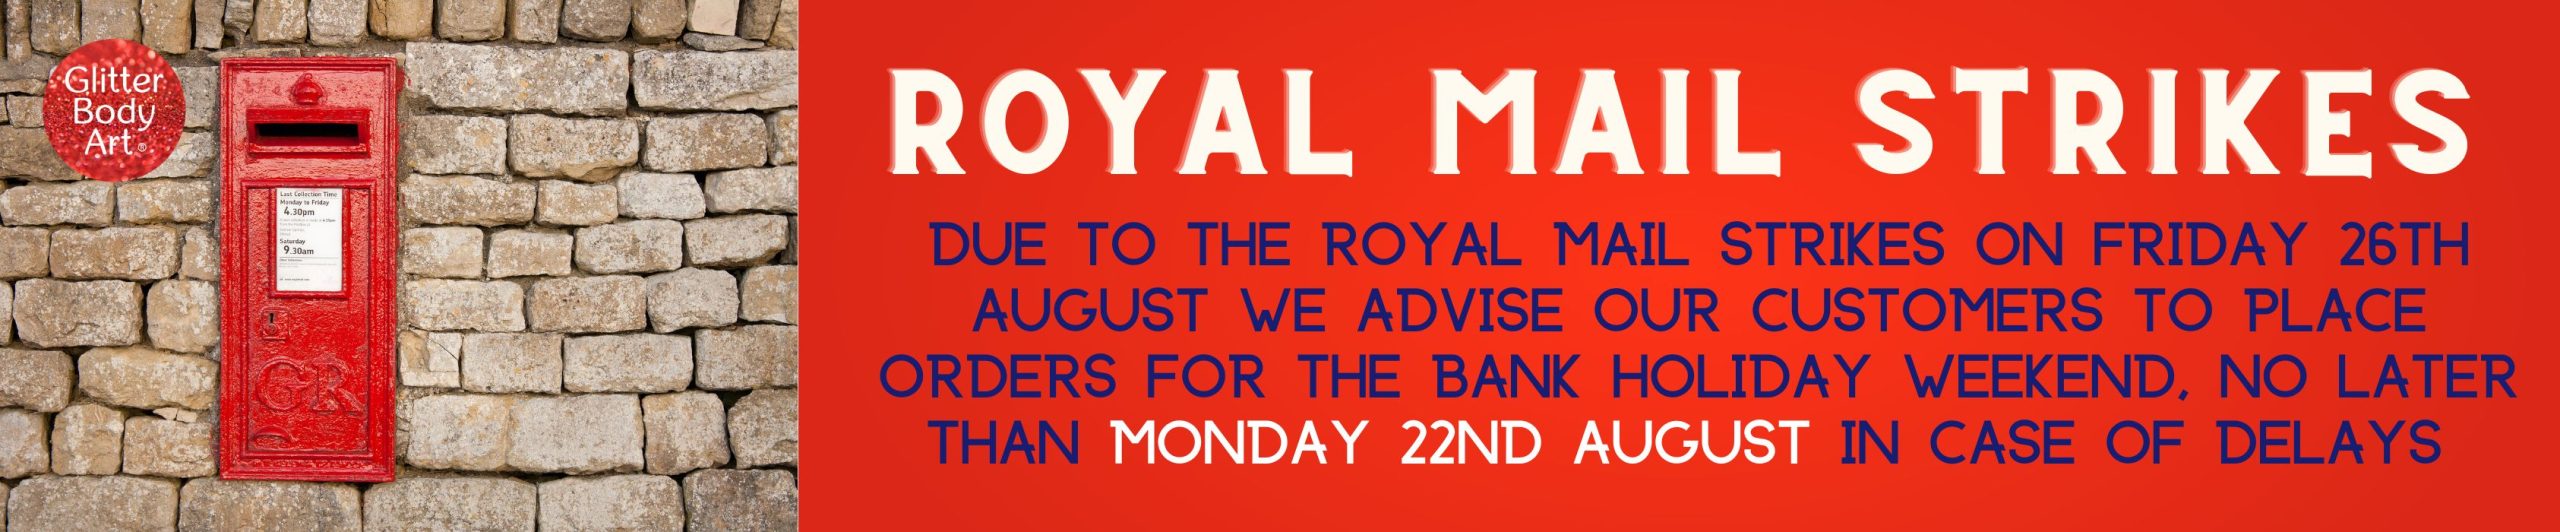 Royal mail strike banner